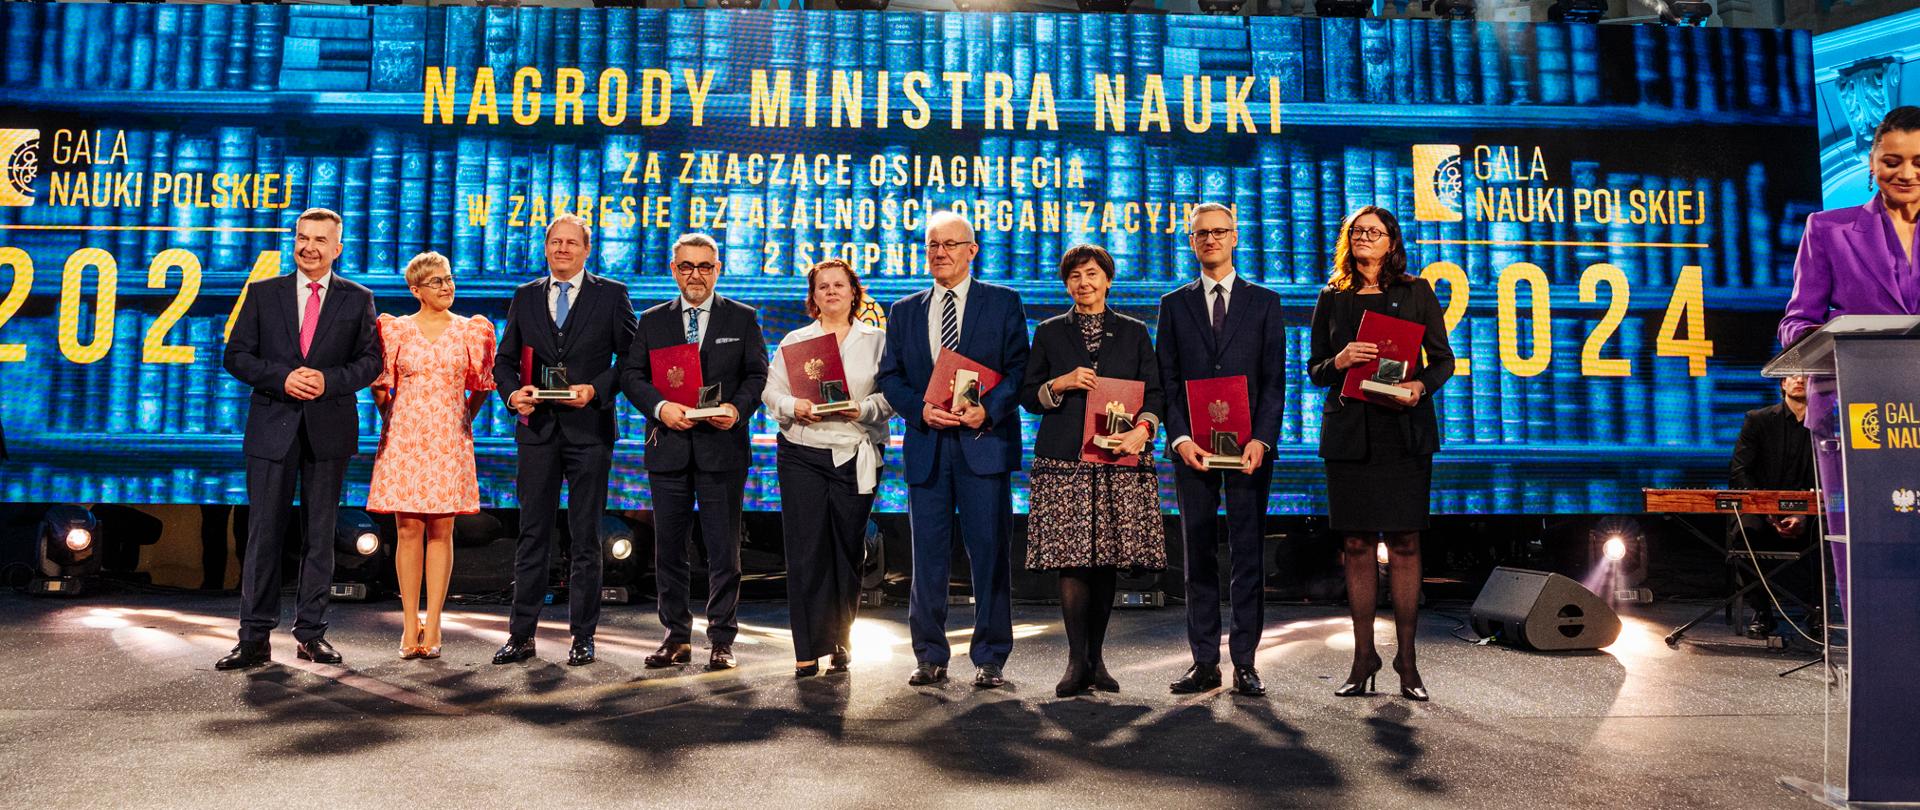 Na tle wielkiego ekranu z napisem Nagrody ministra stoi minister Wieczorek, wiceminister Mrówczyńska i kilka osób trzymających czerwone teczki.